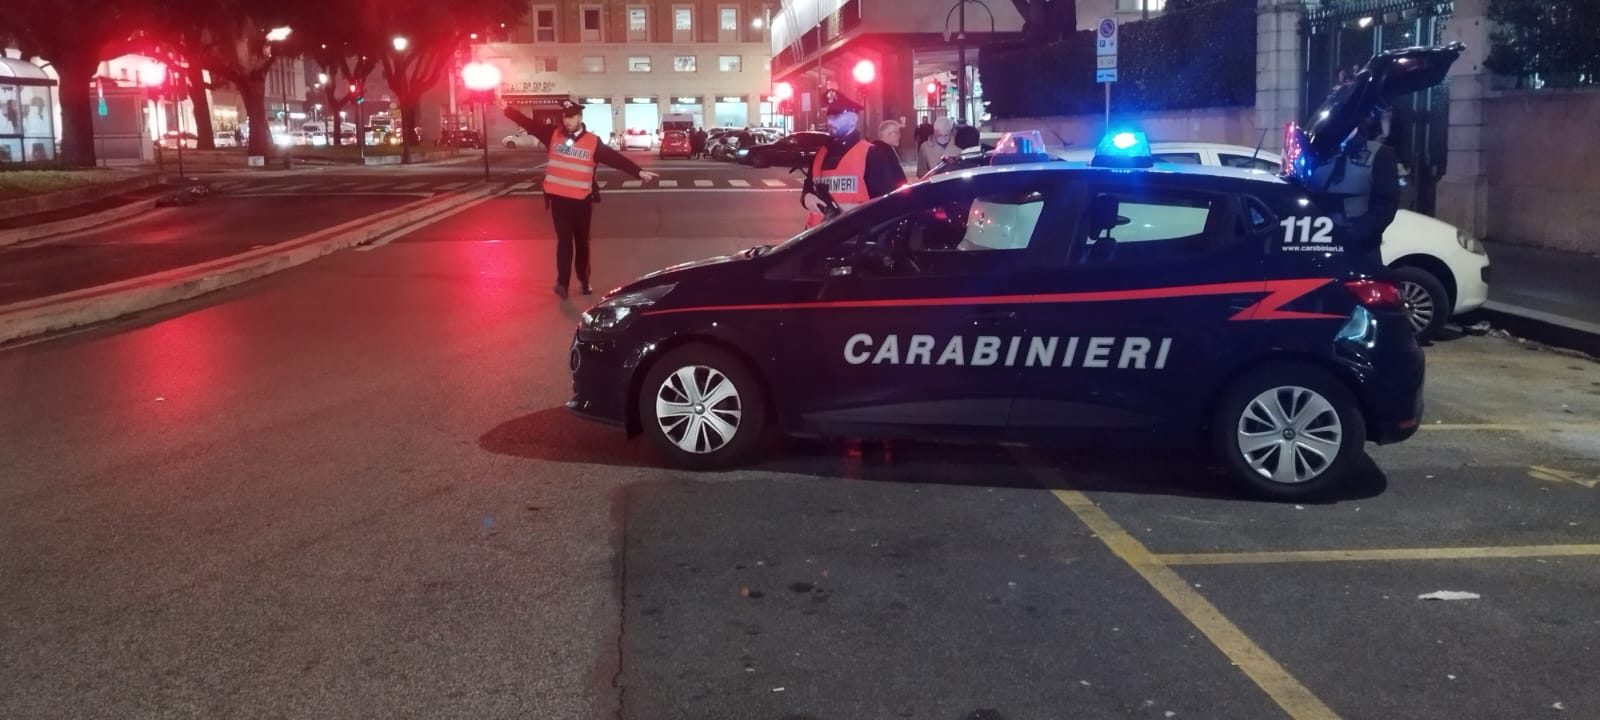 Roma, a bordo di un motorino rubato fornisce false generalità ai carabinieri pur di non farsi arrestare: arrestato e denunciato 36enne.